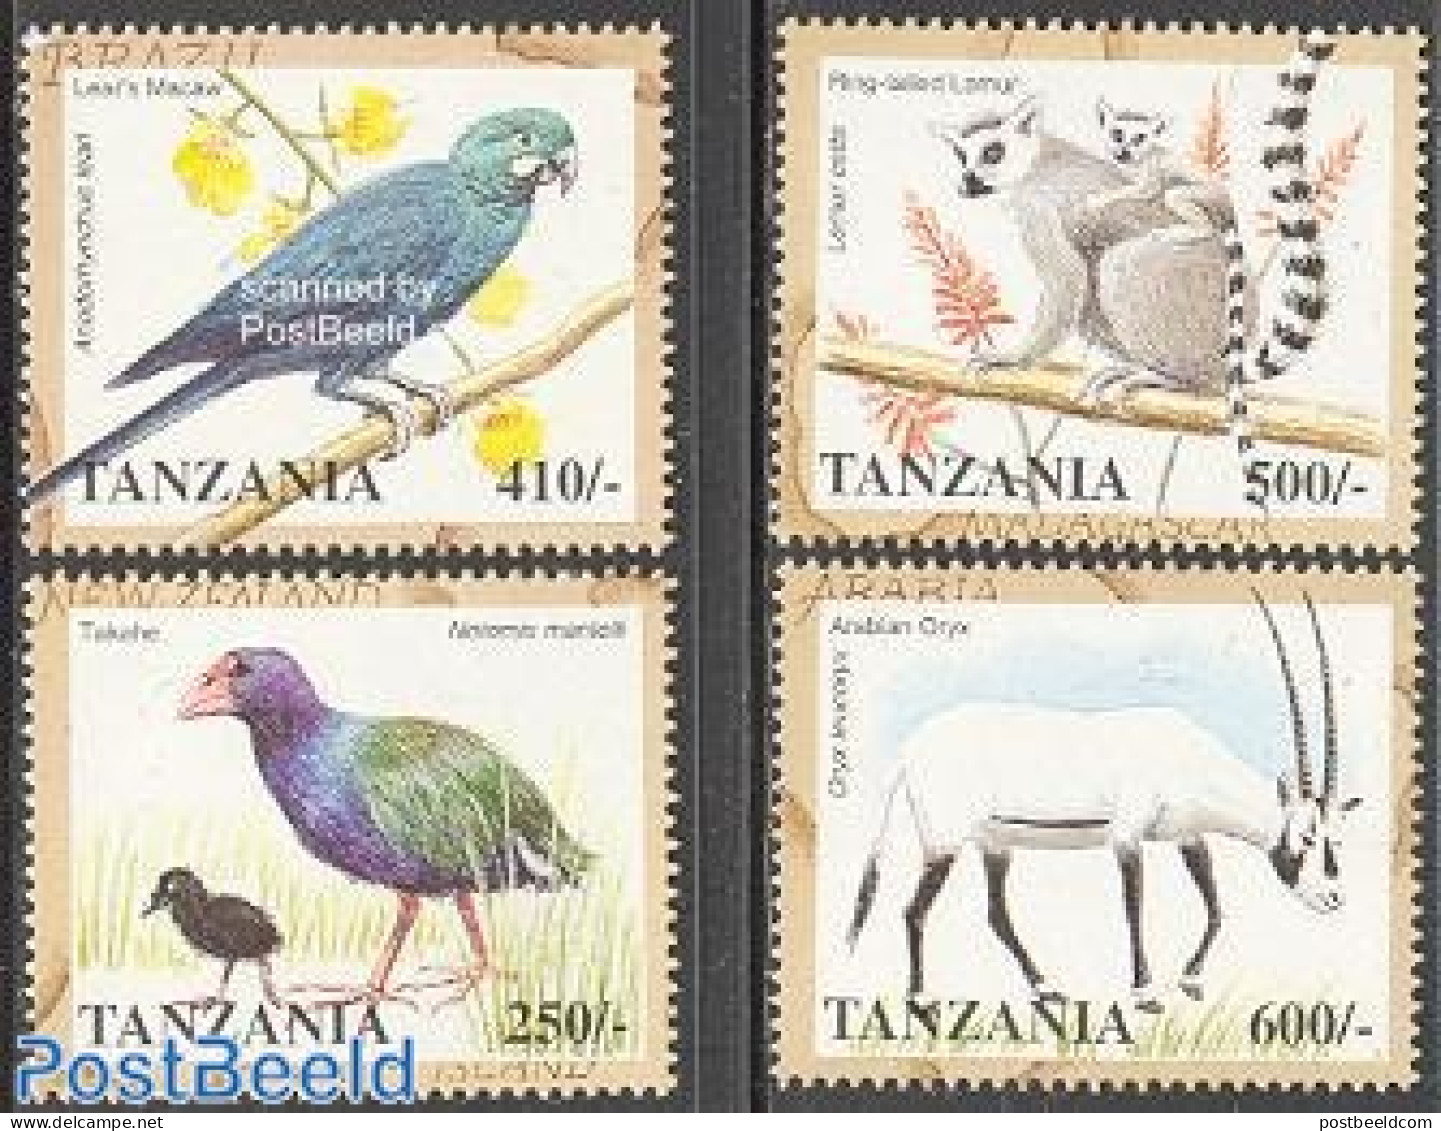 Tanzania 1998 Animals 4v, Mint NH, Nature - Animals (others & Mixed) - Birds - Parrots - Tansania (1964-...)